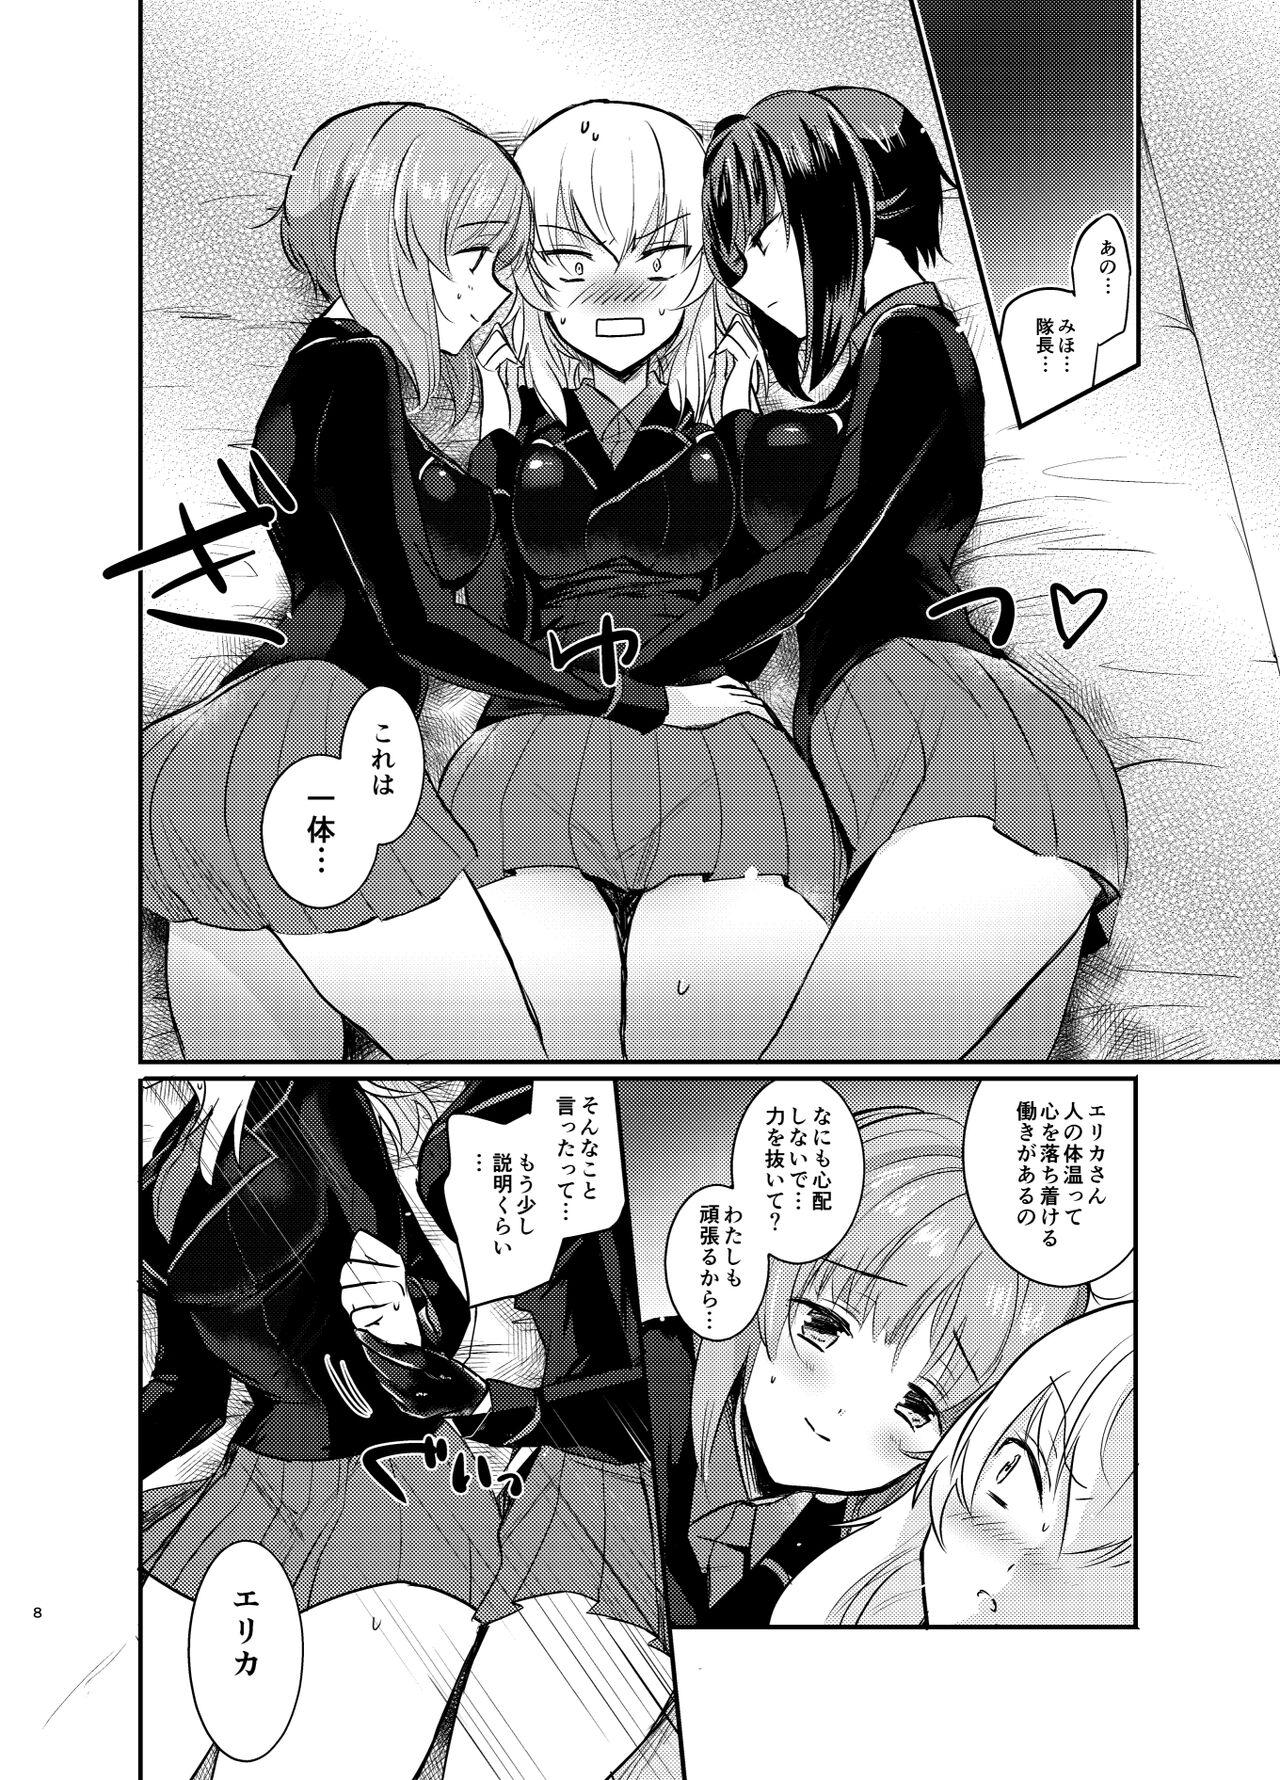 Sologirl Nishizumi Refre - Girls und panzer Stranger - Page 8